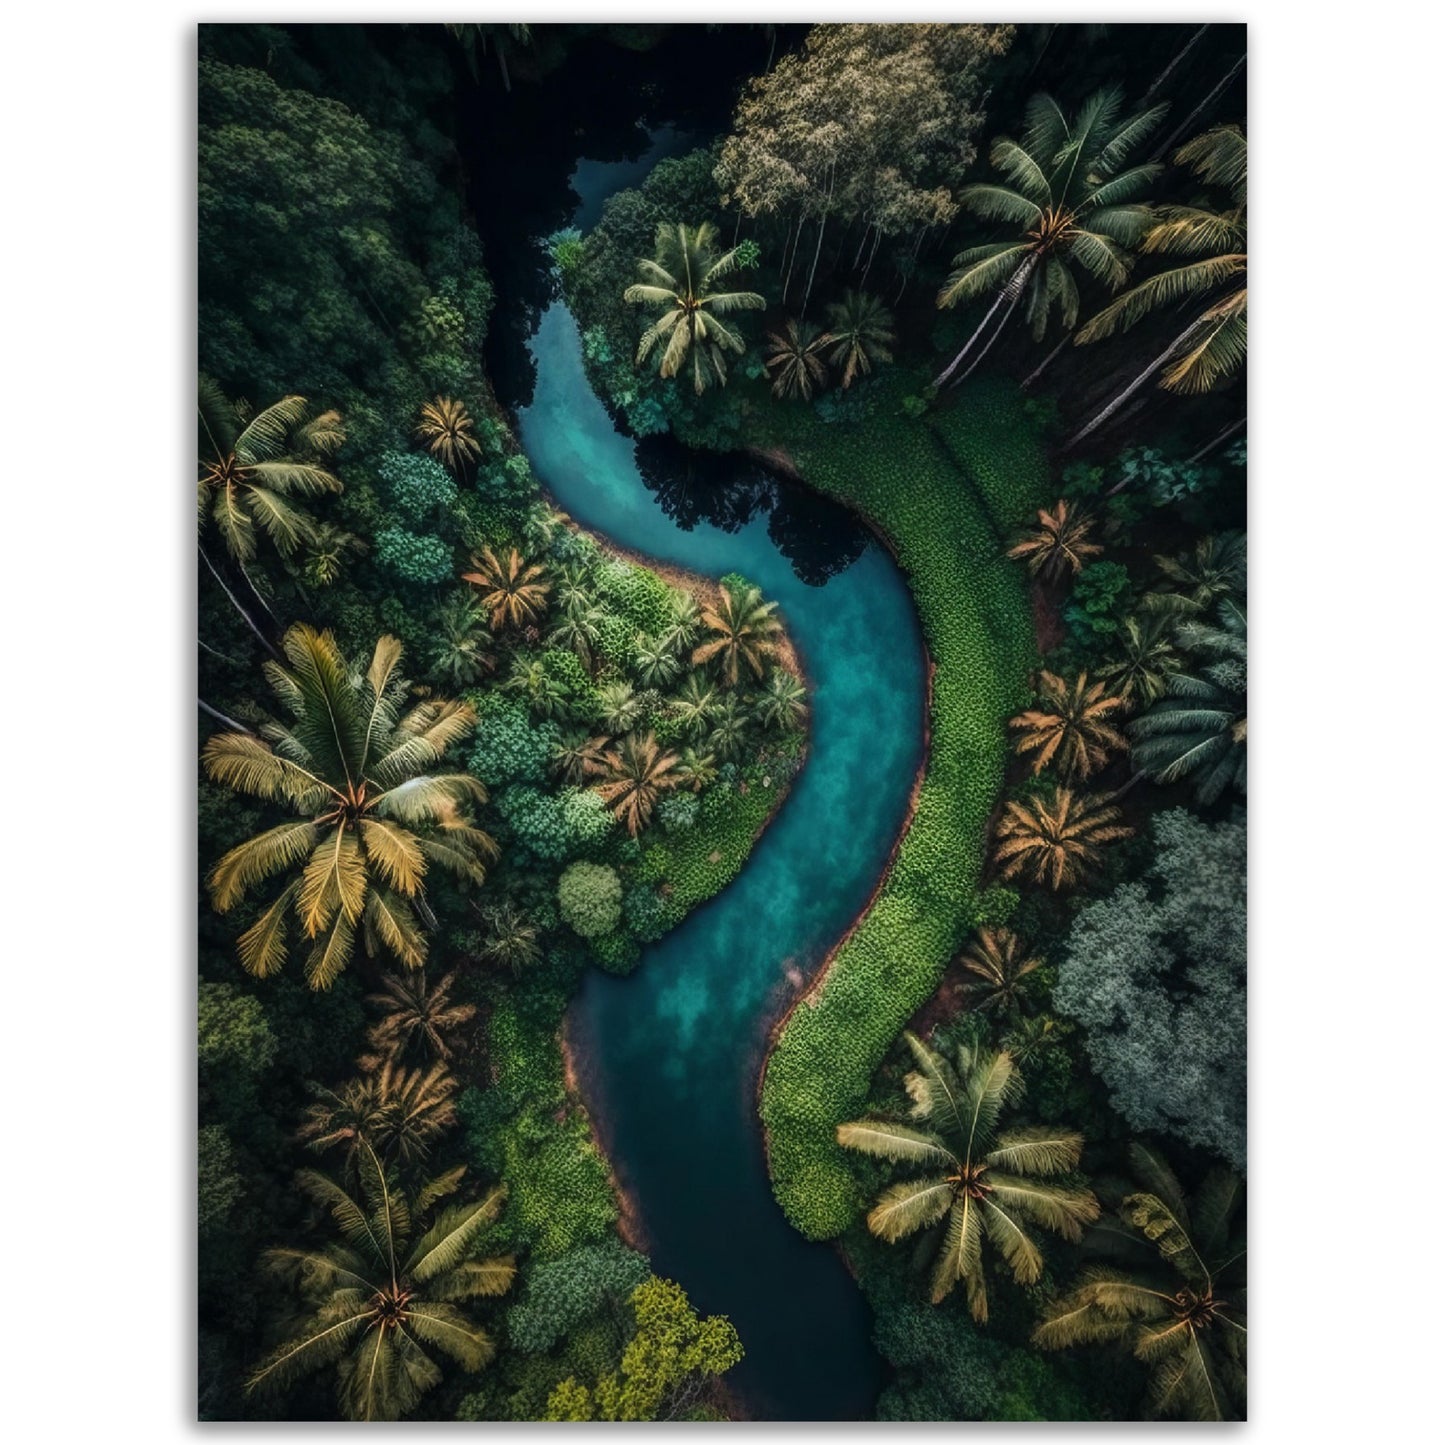 Jungle River No1 Print